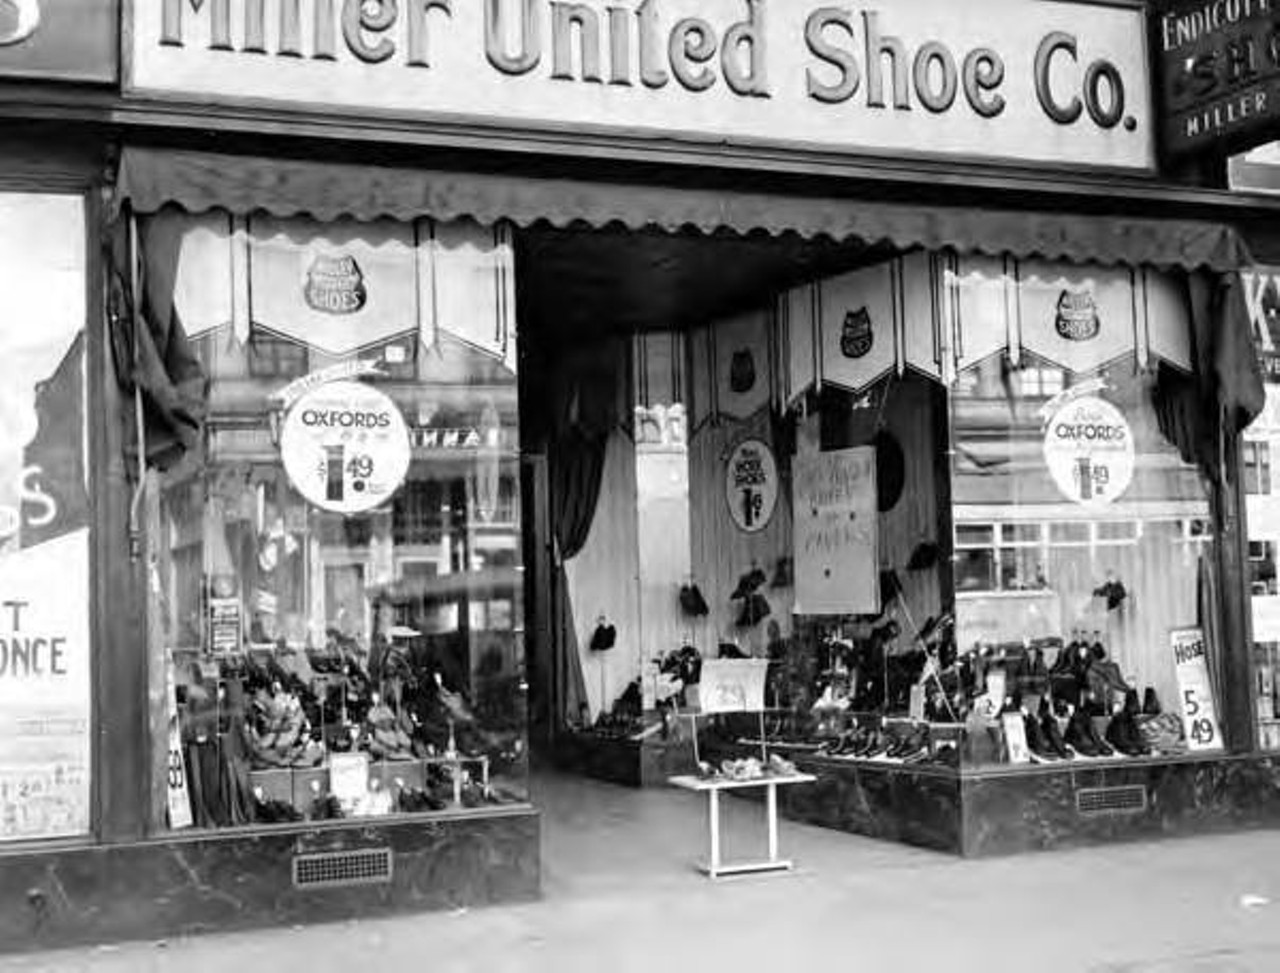 Miller United Shoe Co., 1935